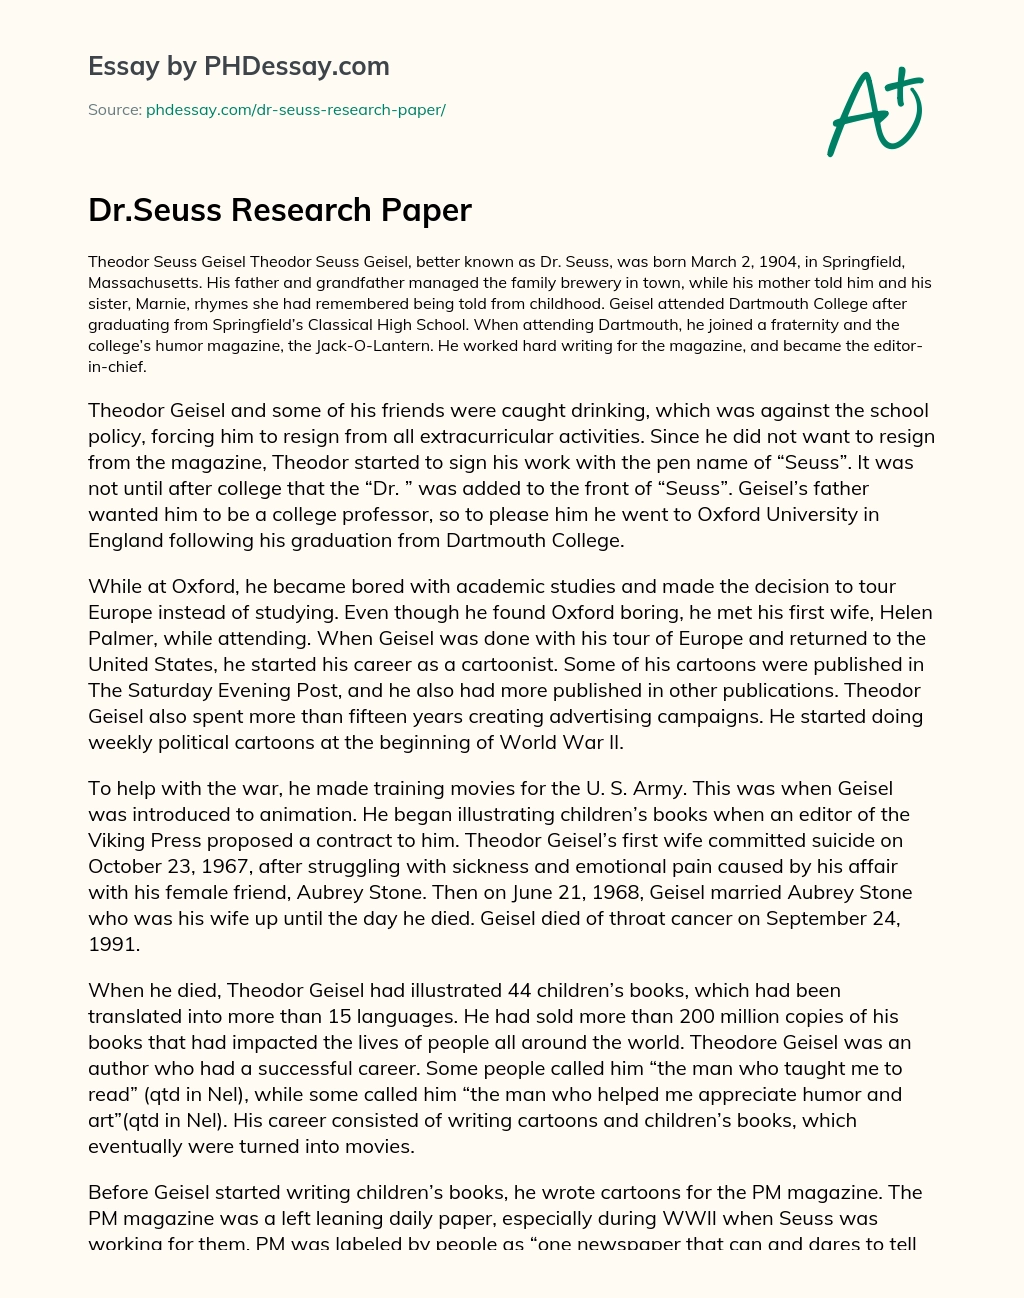 Dr.Seuss Research Paper essay